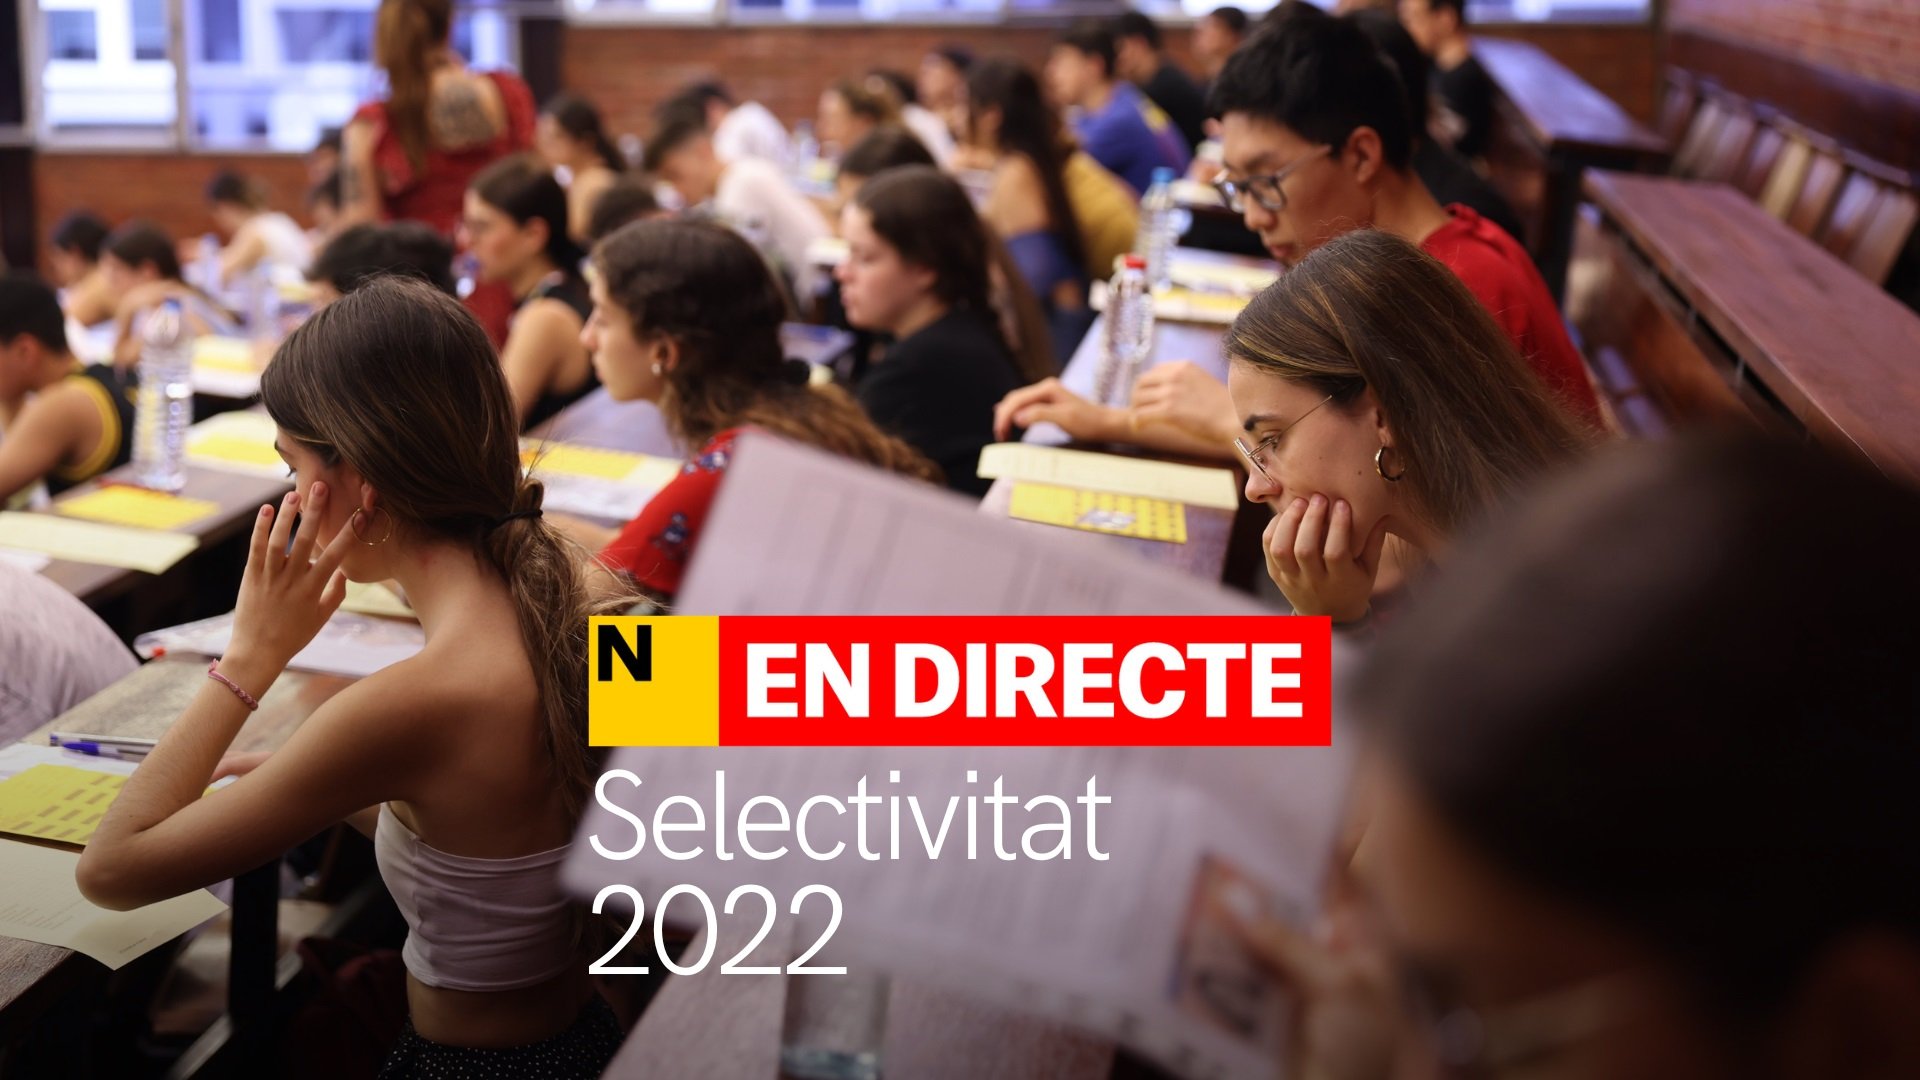 Selectividad 2022, DIRECTO | Tercer día de exámenes de las PAU para 40.000 estudiantes